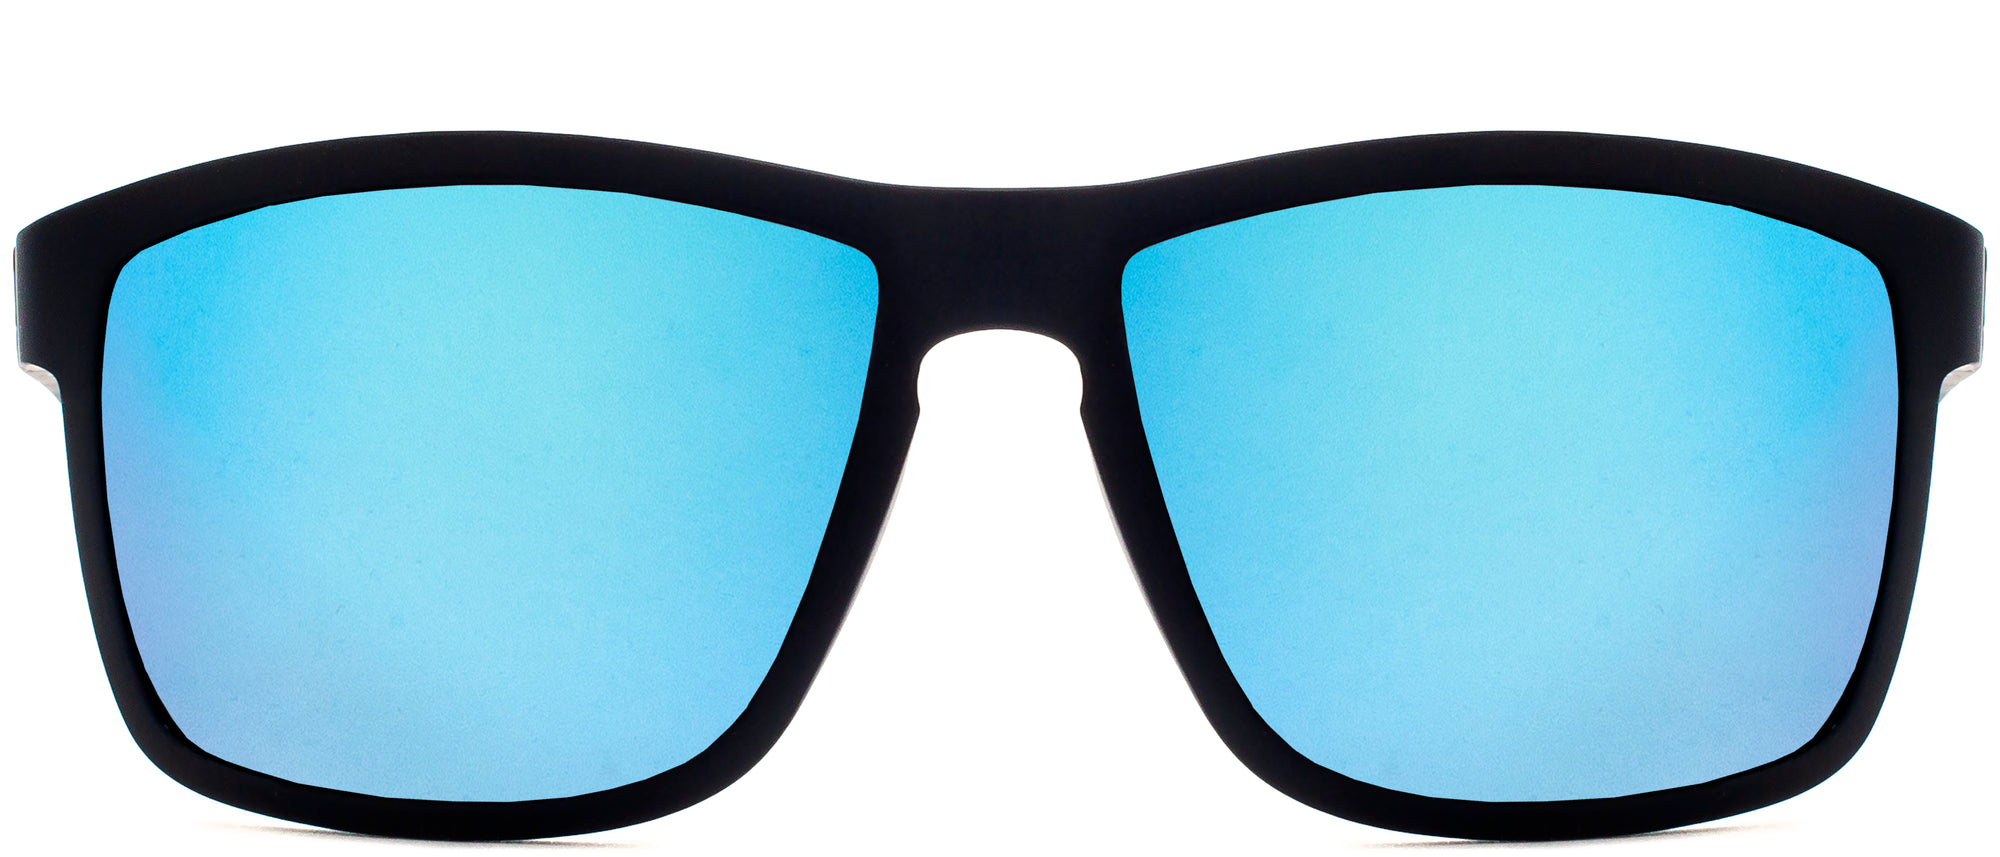 Pimlico Elite Sunglasses